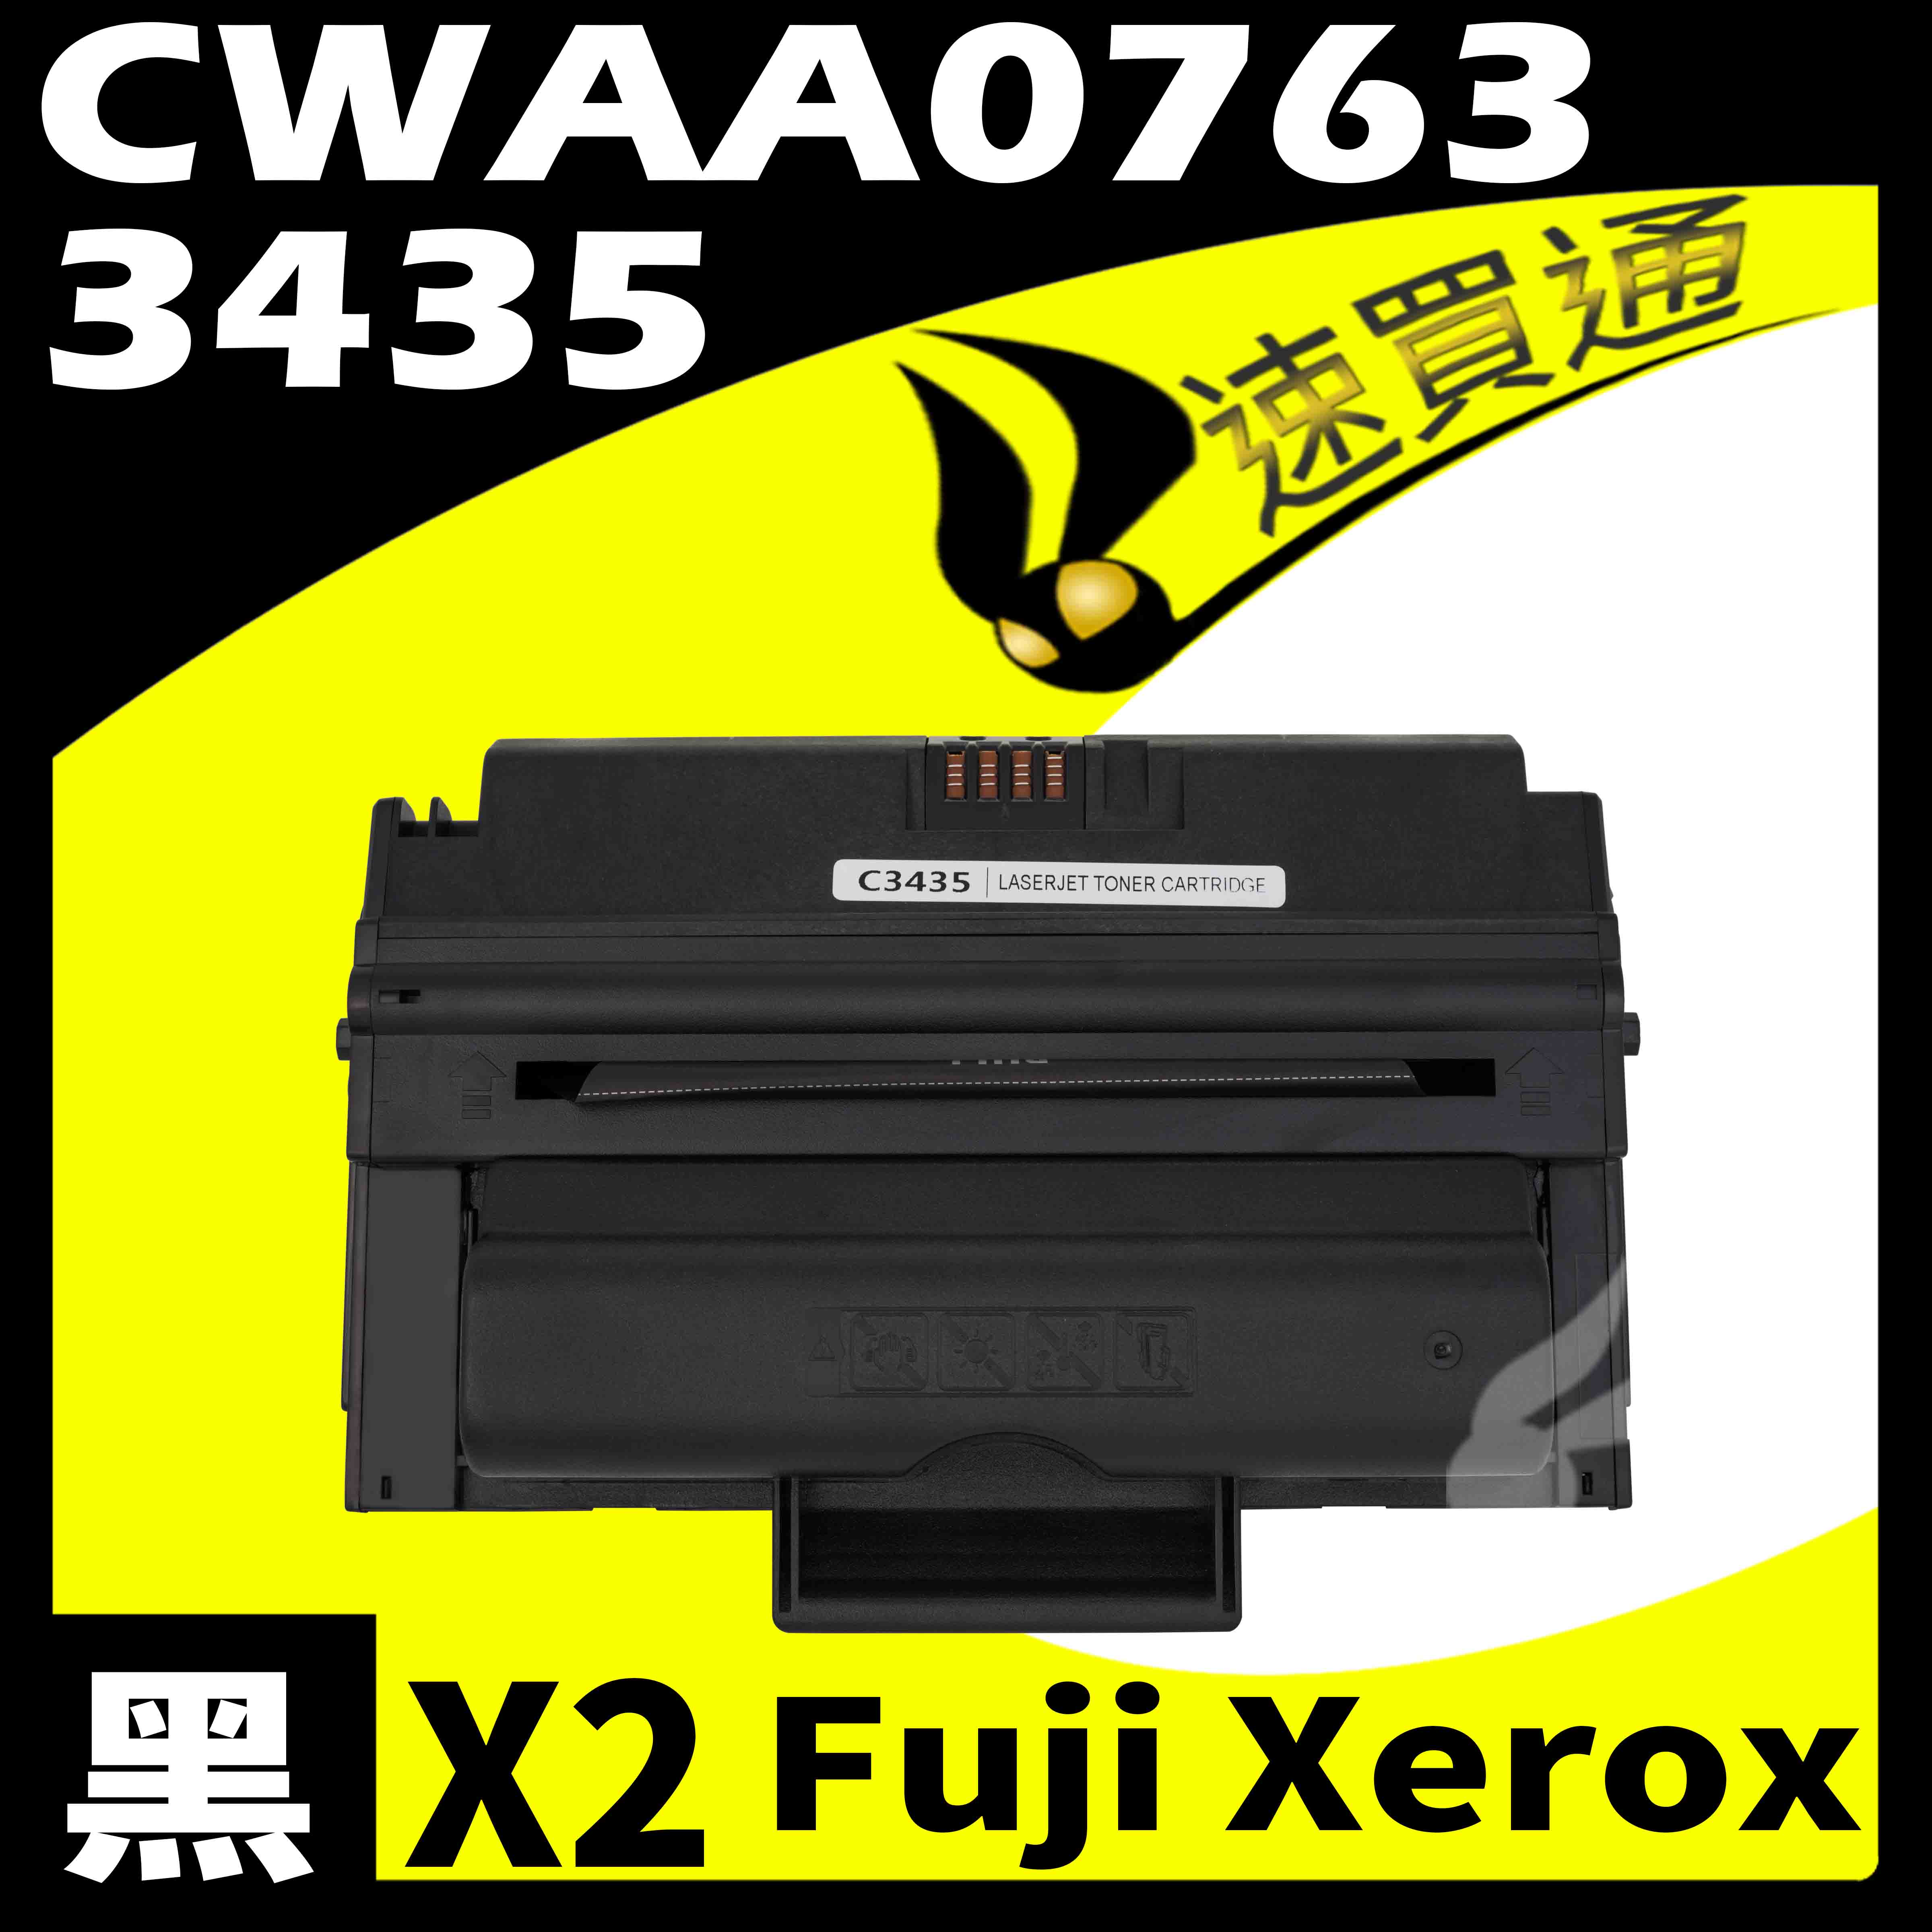 【速買通】超值2件組 Fuji Xerox 3435/CWAA0763 相容碳粉匣